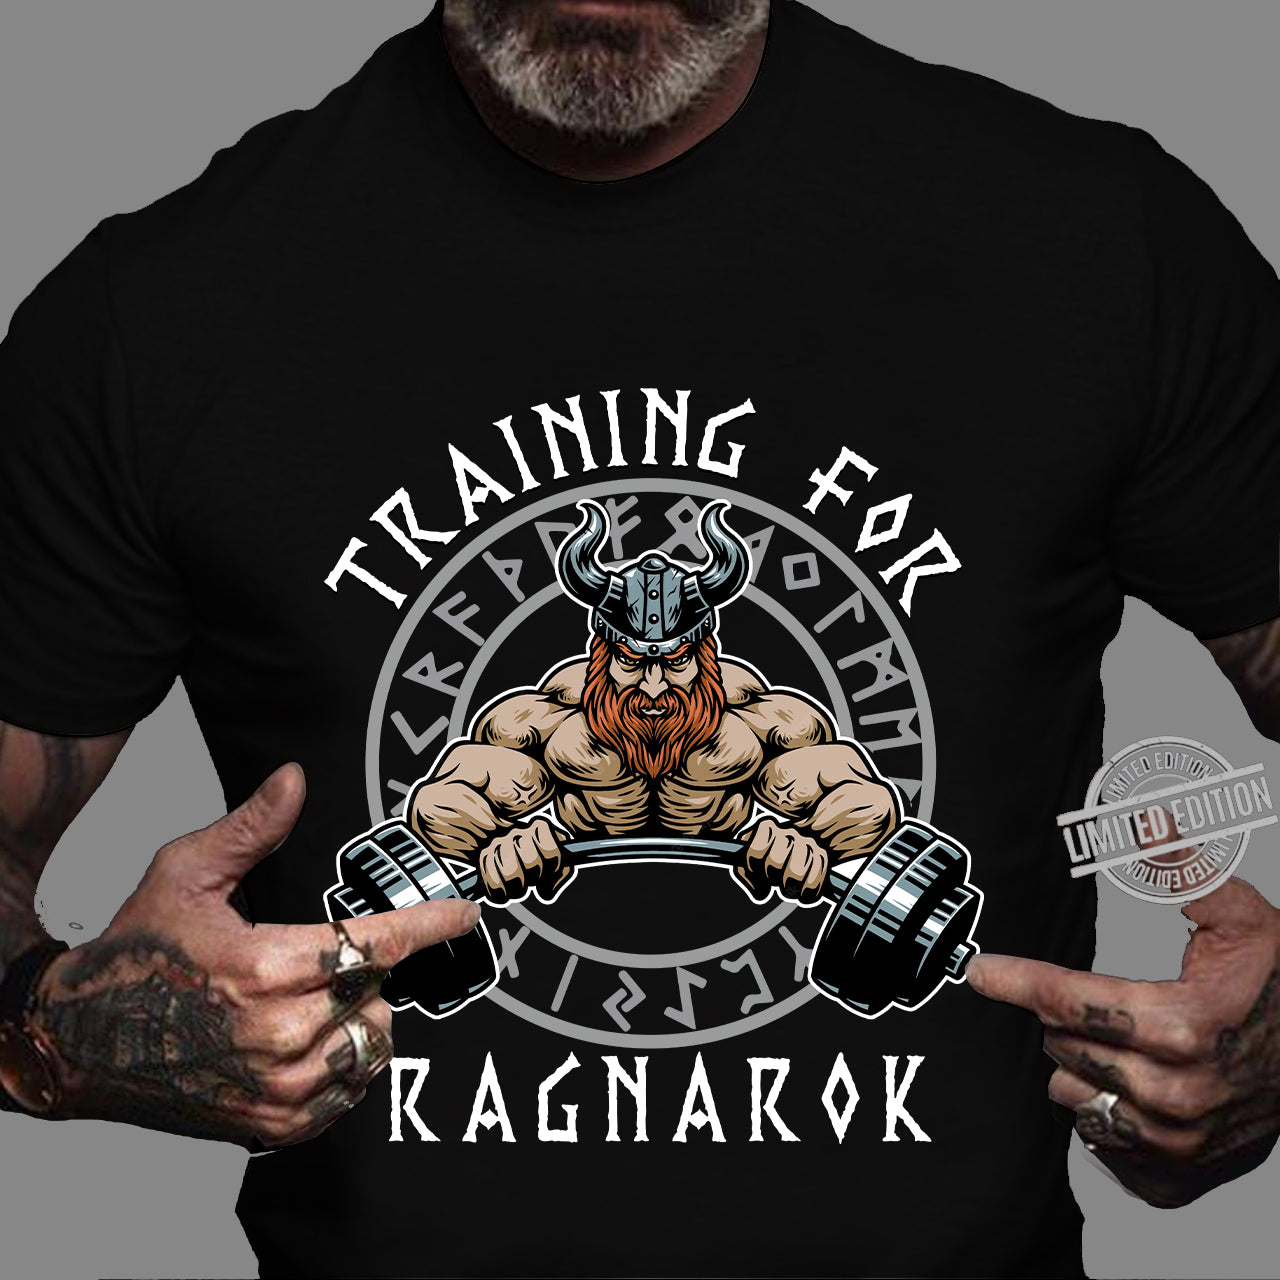 Studiet Rund generelt Gym Bodybuilding T-shirt Weightlifting shirts Training for Ragnarok – Style  My Pride